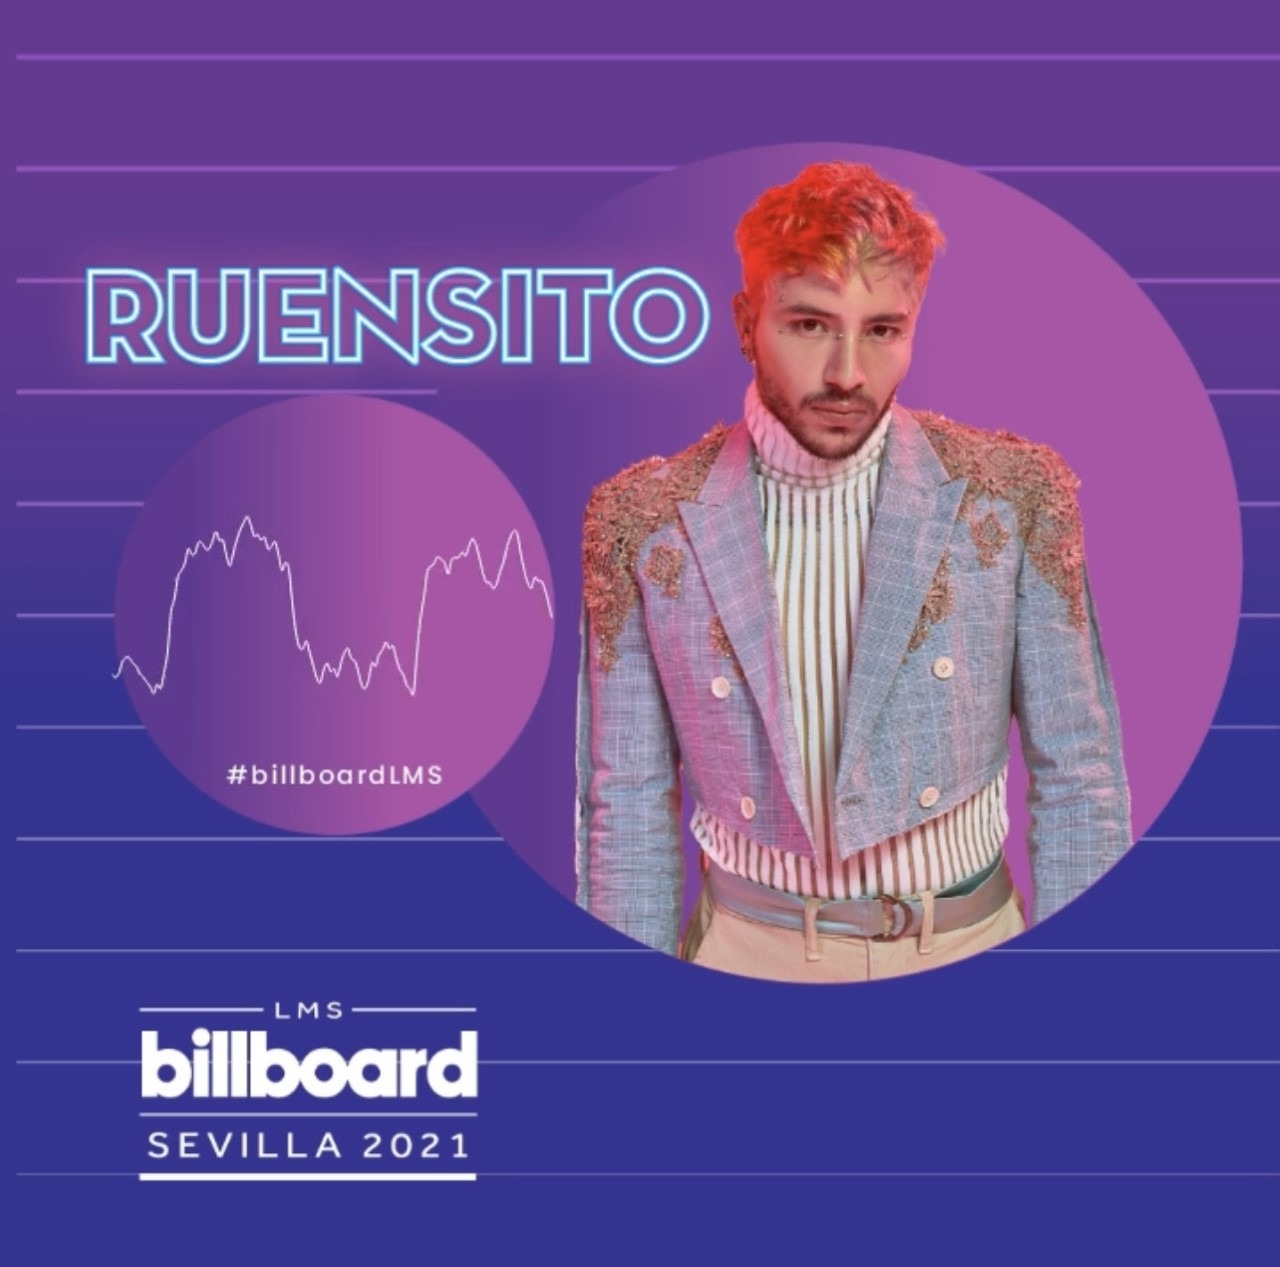 المغني المكسيكي اللبناني روينسيتو في قائمة بيلبورد العالمية للموسيقى اللاتينية